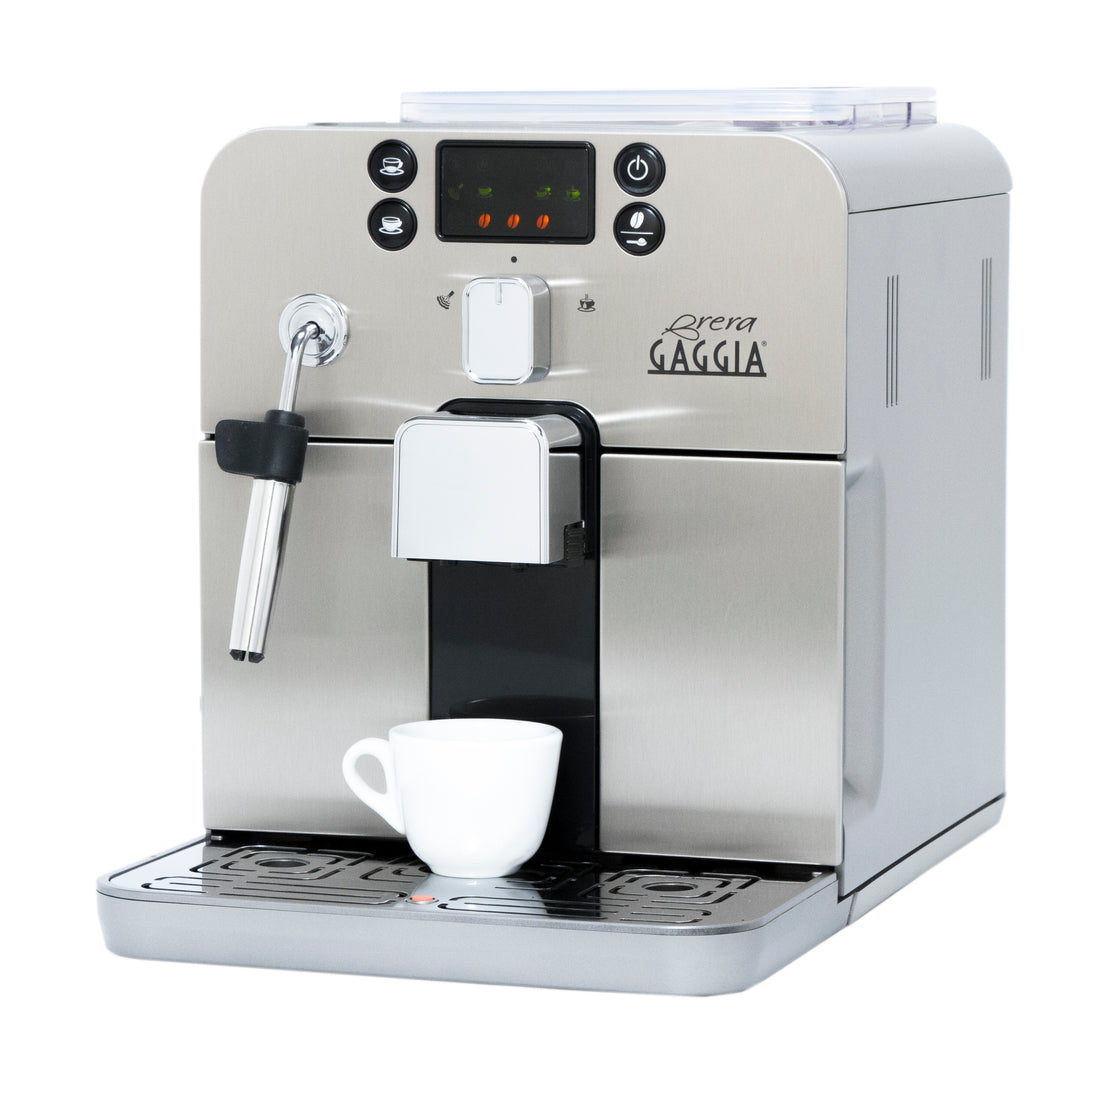 Wmf Lumero Espresso Coffee Machine Silver